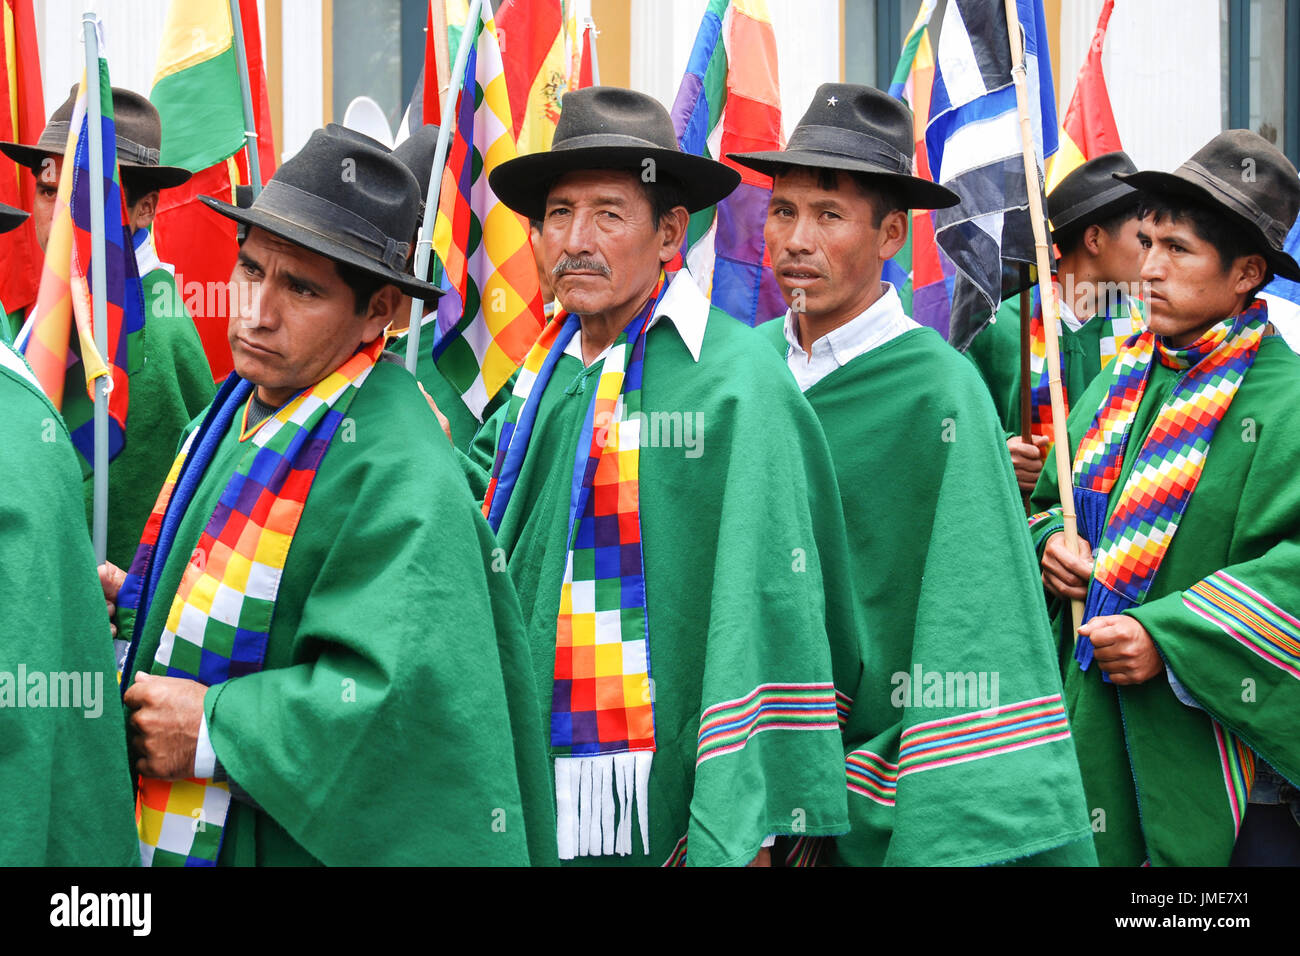 Abito boliviano immagini e fotografie stock ad alta risoluzione - Alamy